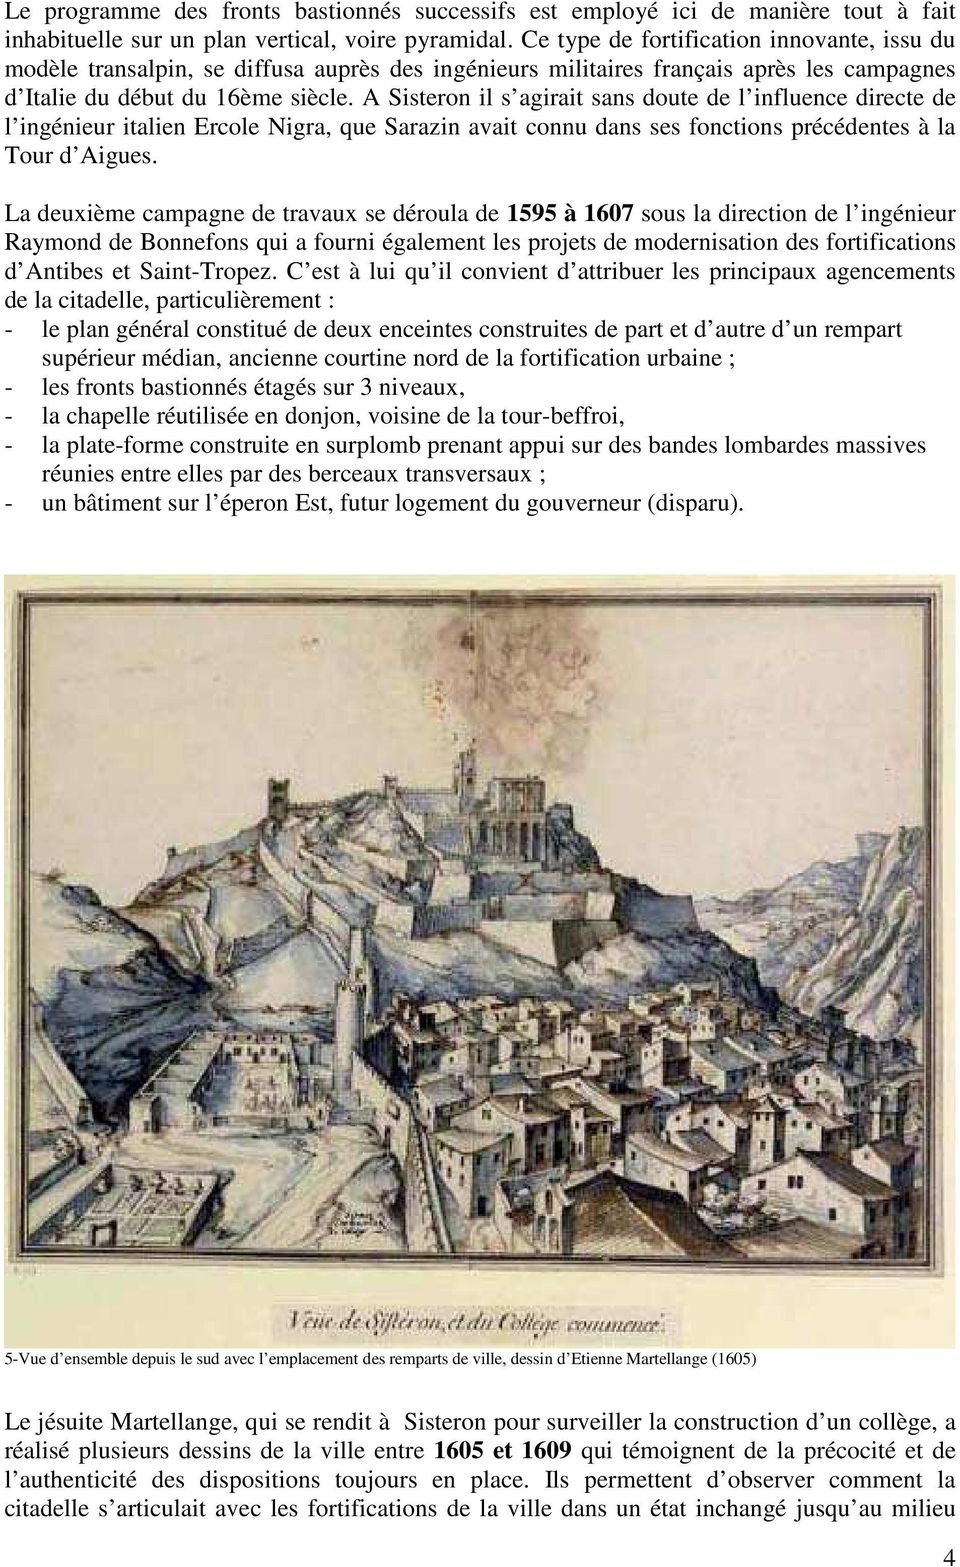 A Sisteron il s agirait sans doute de l influence directe de l ingénieur italien Ercole Nigra, que Sarazin avait connu dans ses fonctions précédentes à la Tour d Aigues.